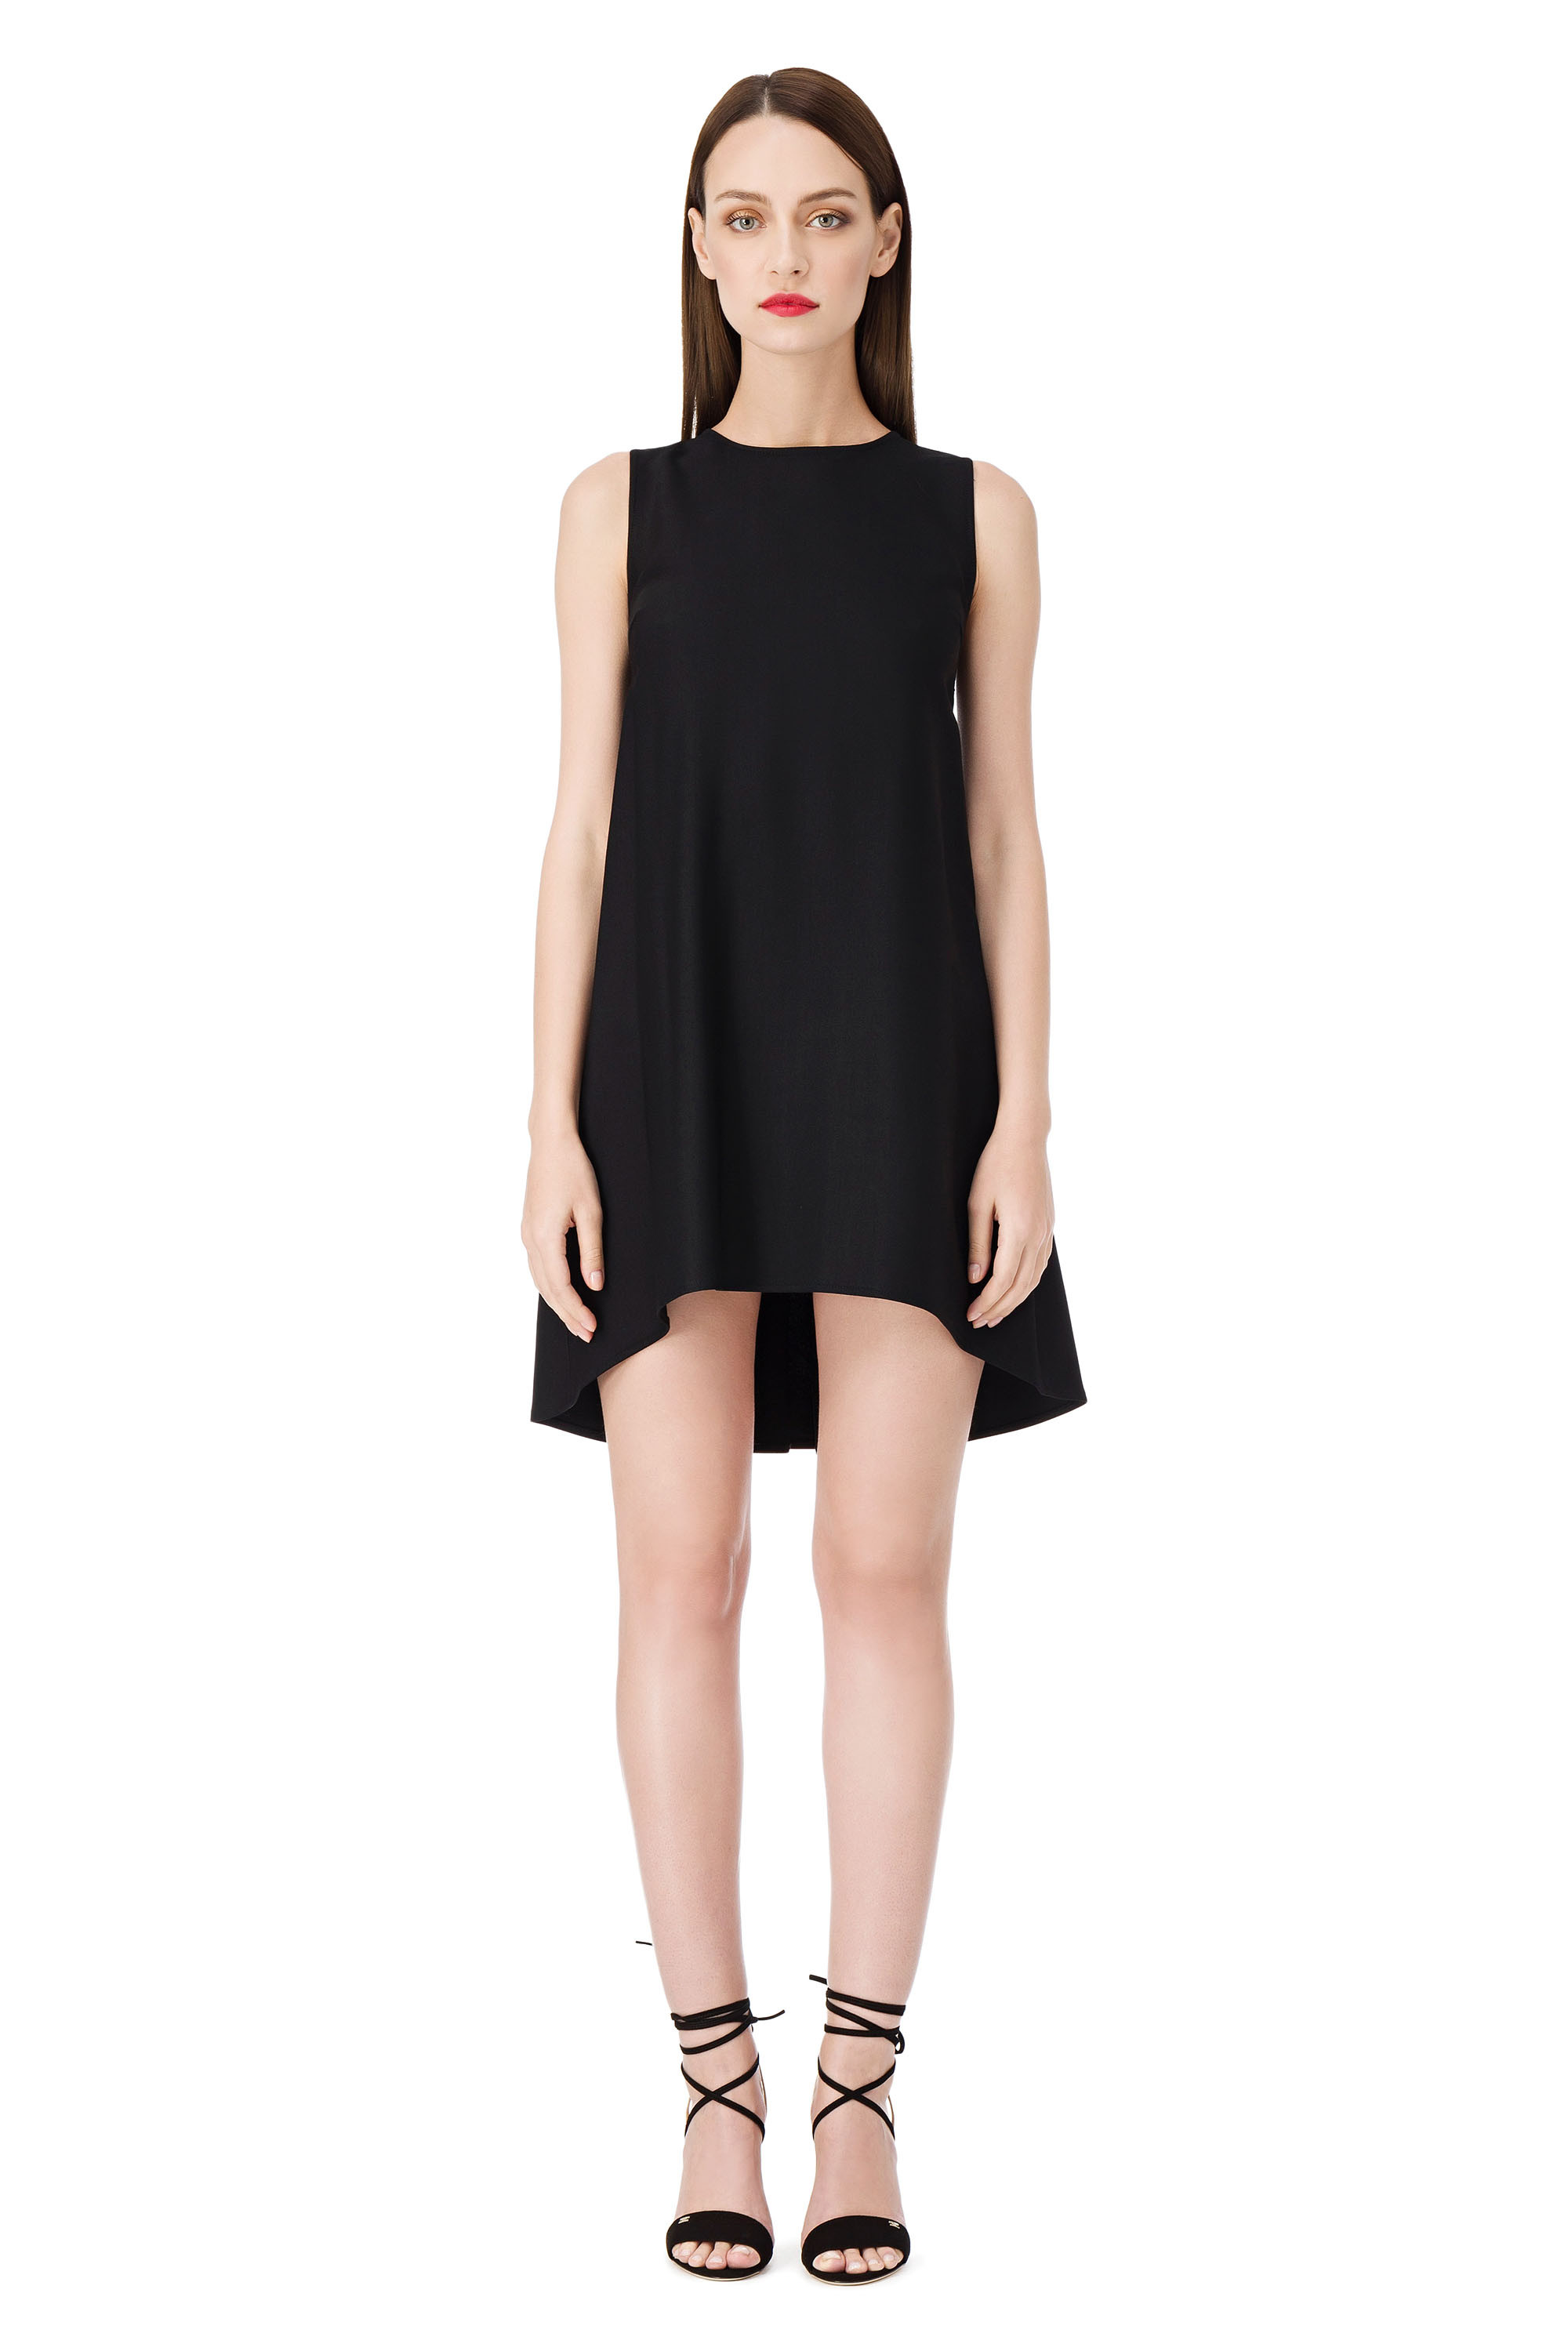 black short dress for girls